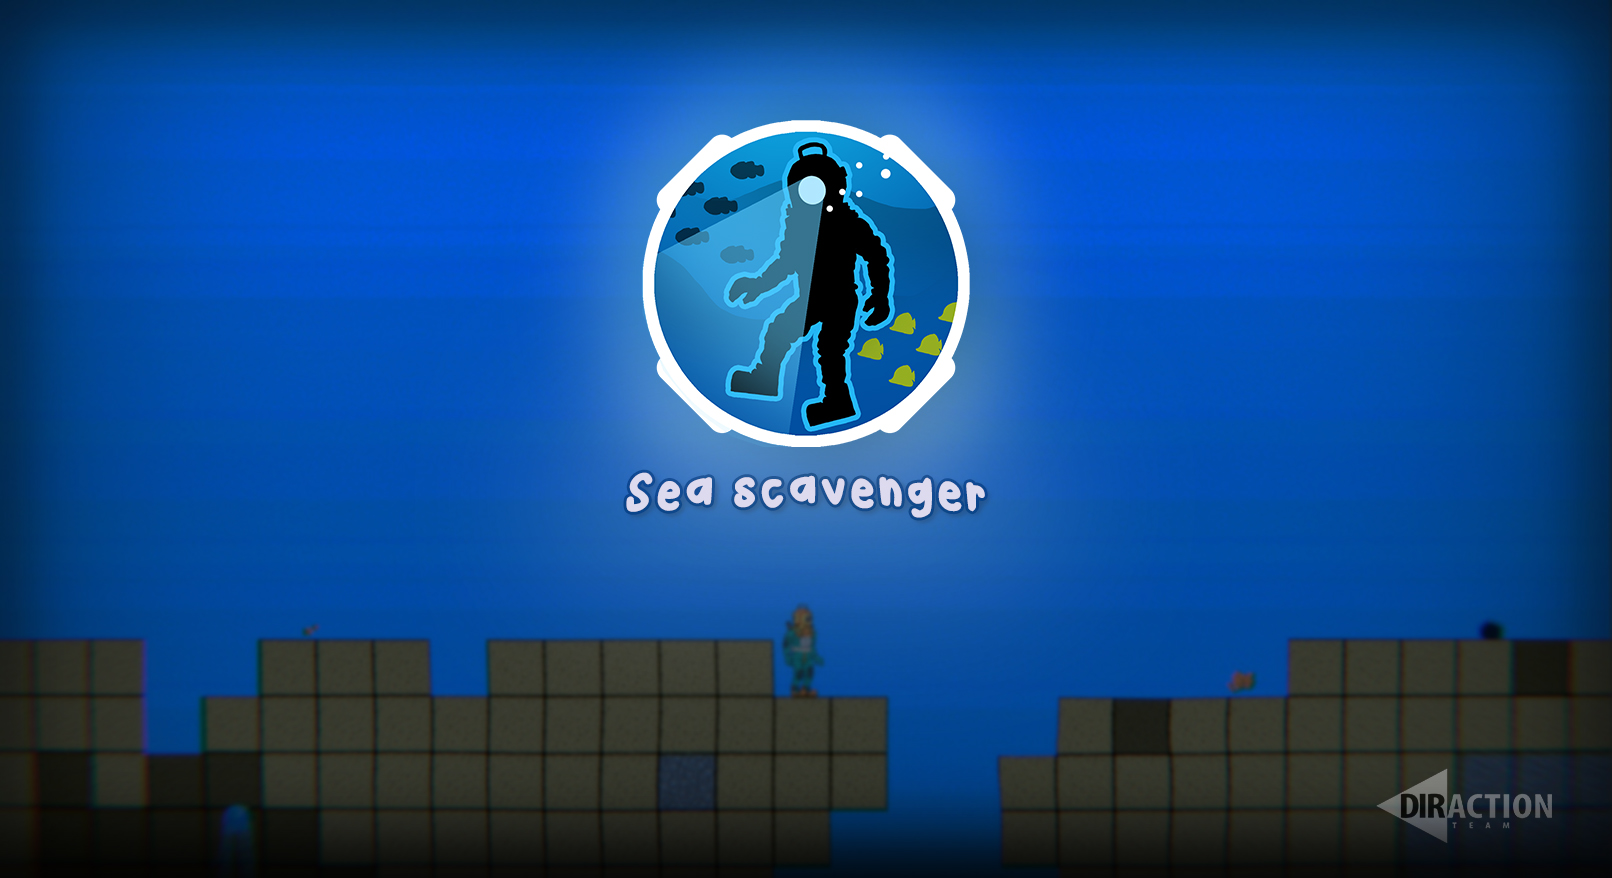 Sea scavenger